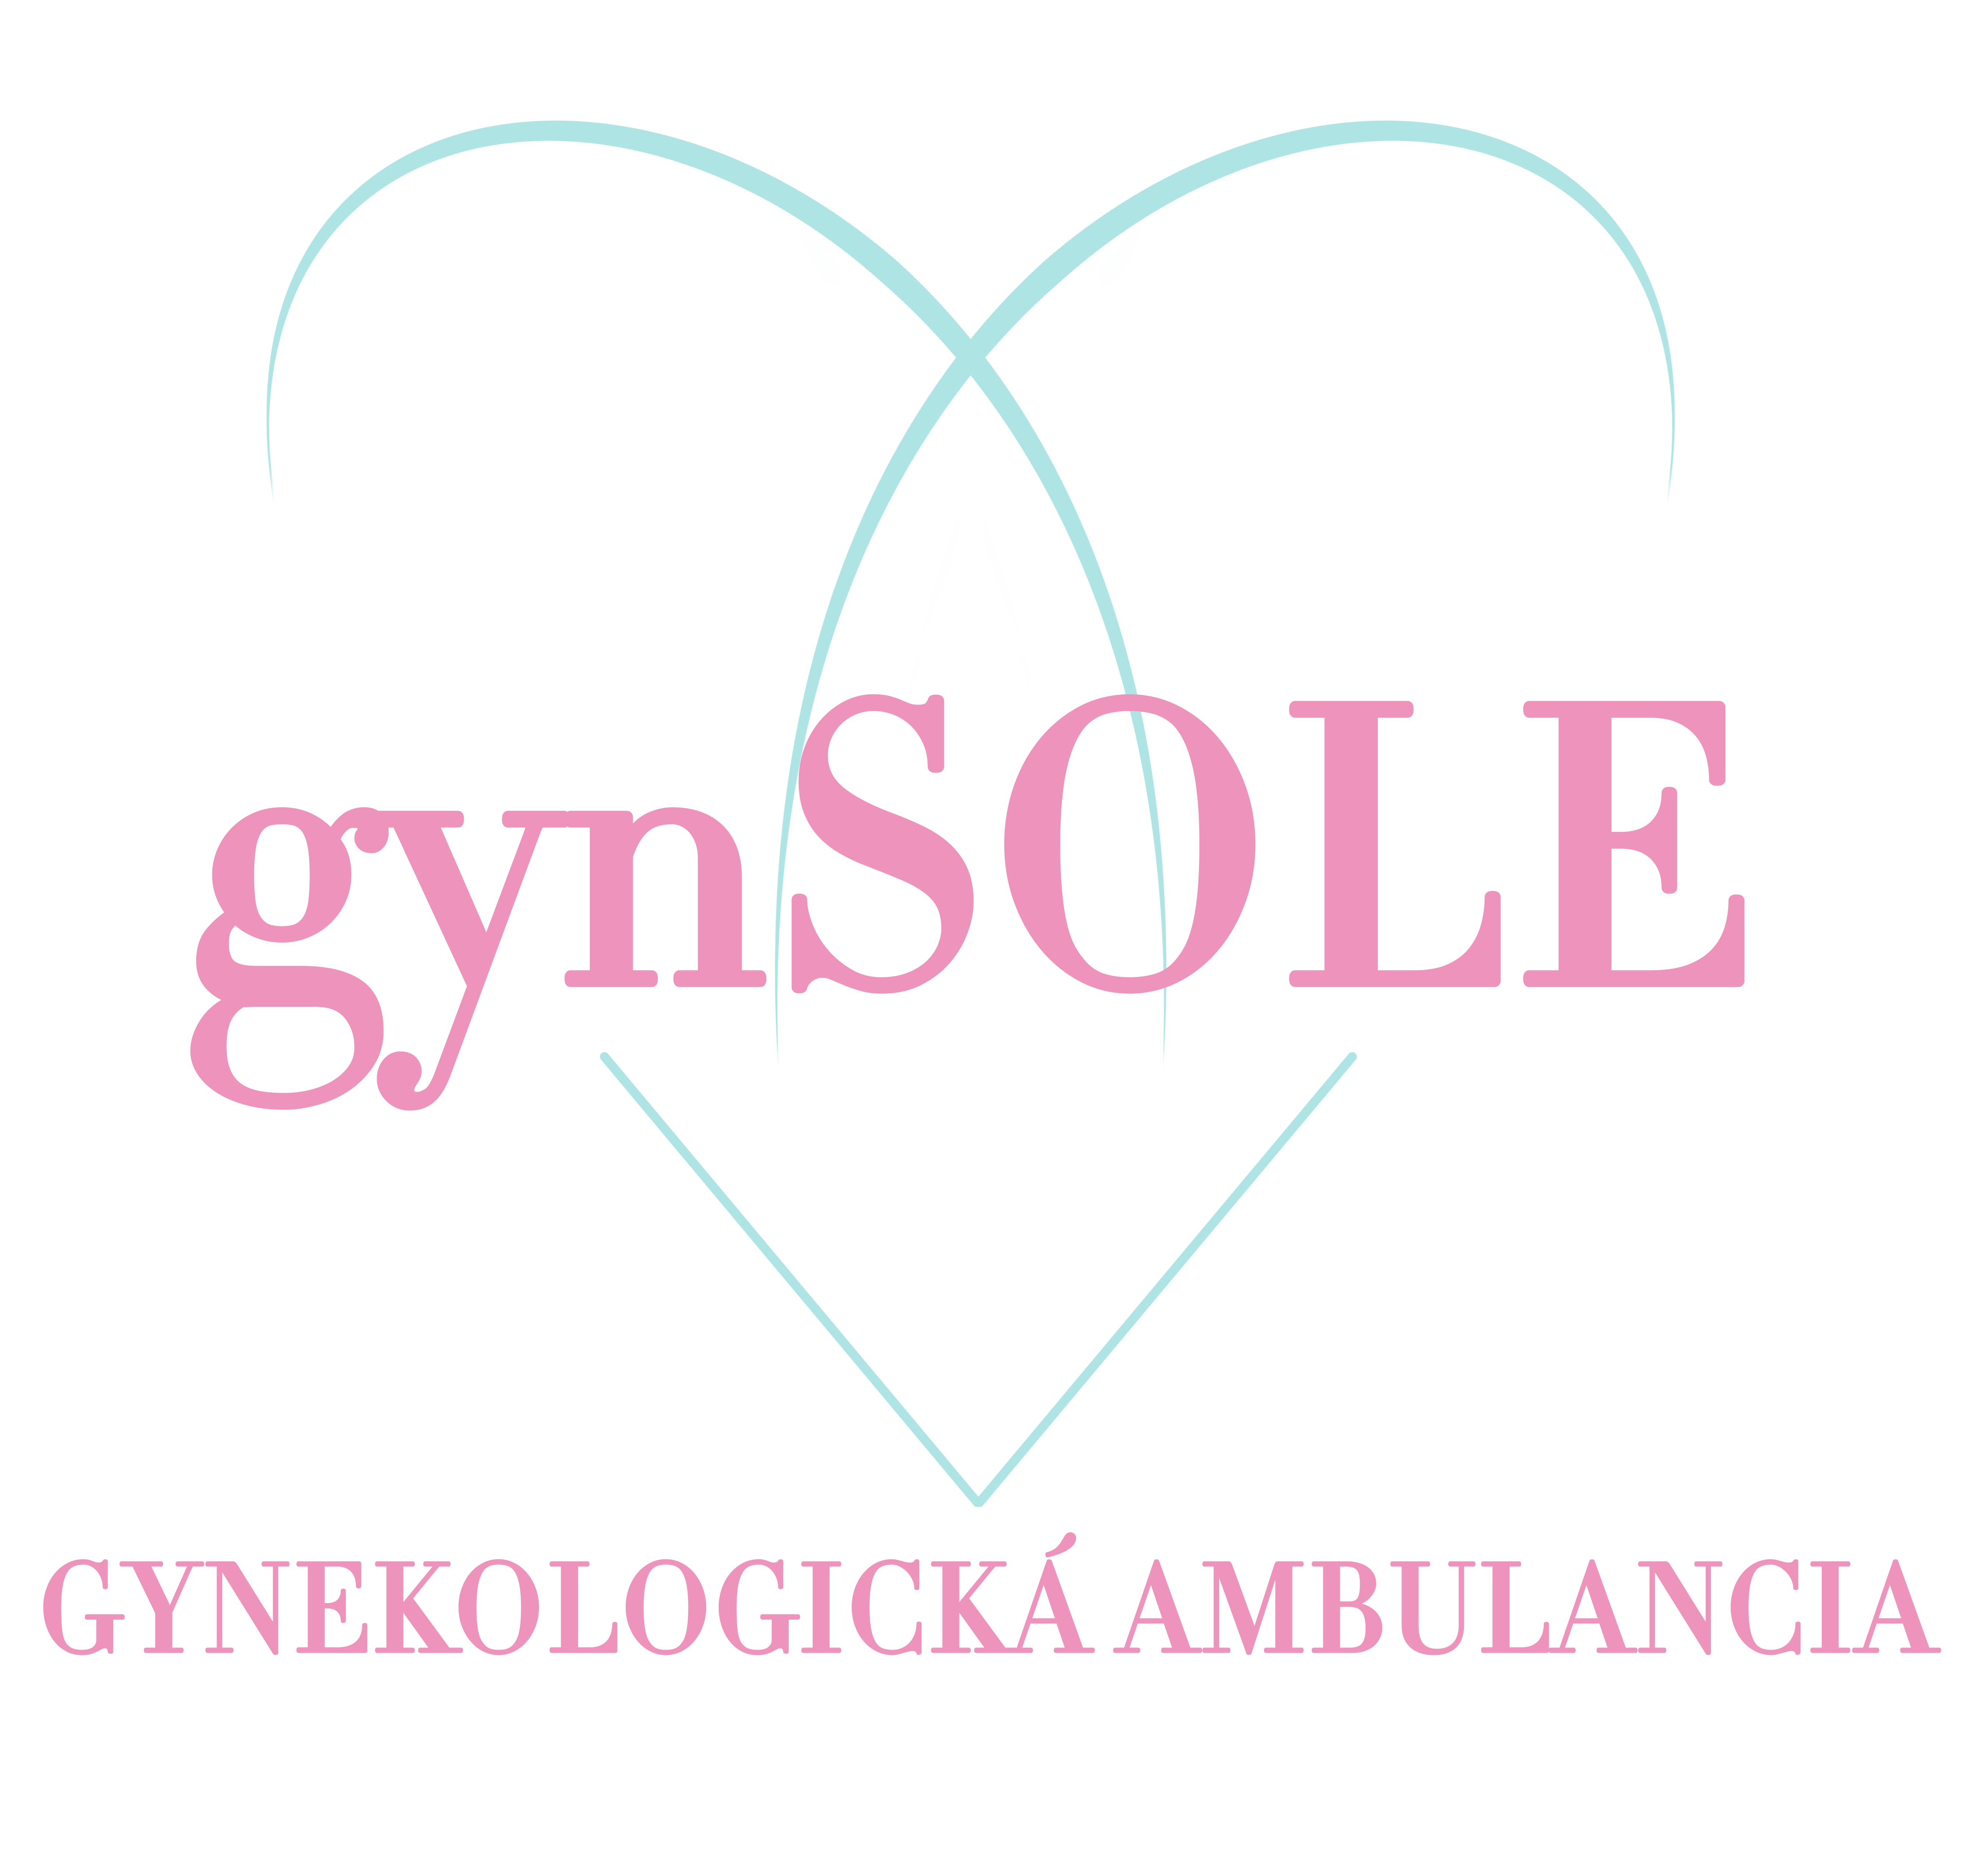 gynSOLE - gynekologicka ambulancia - logo 2